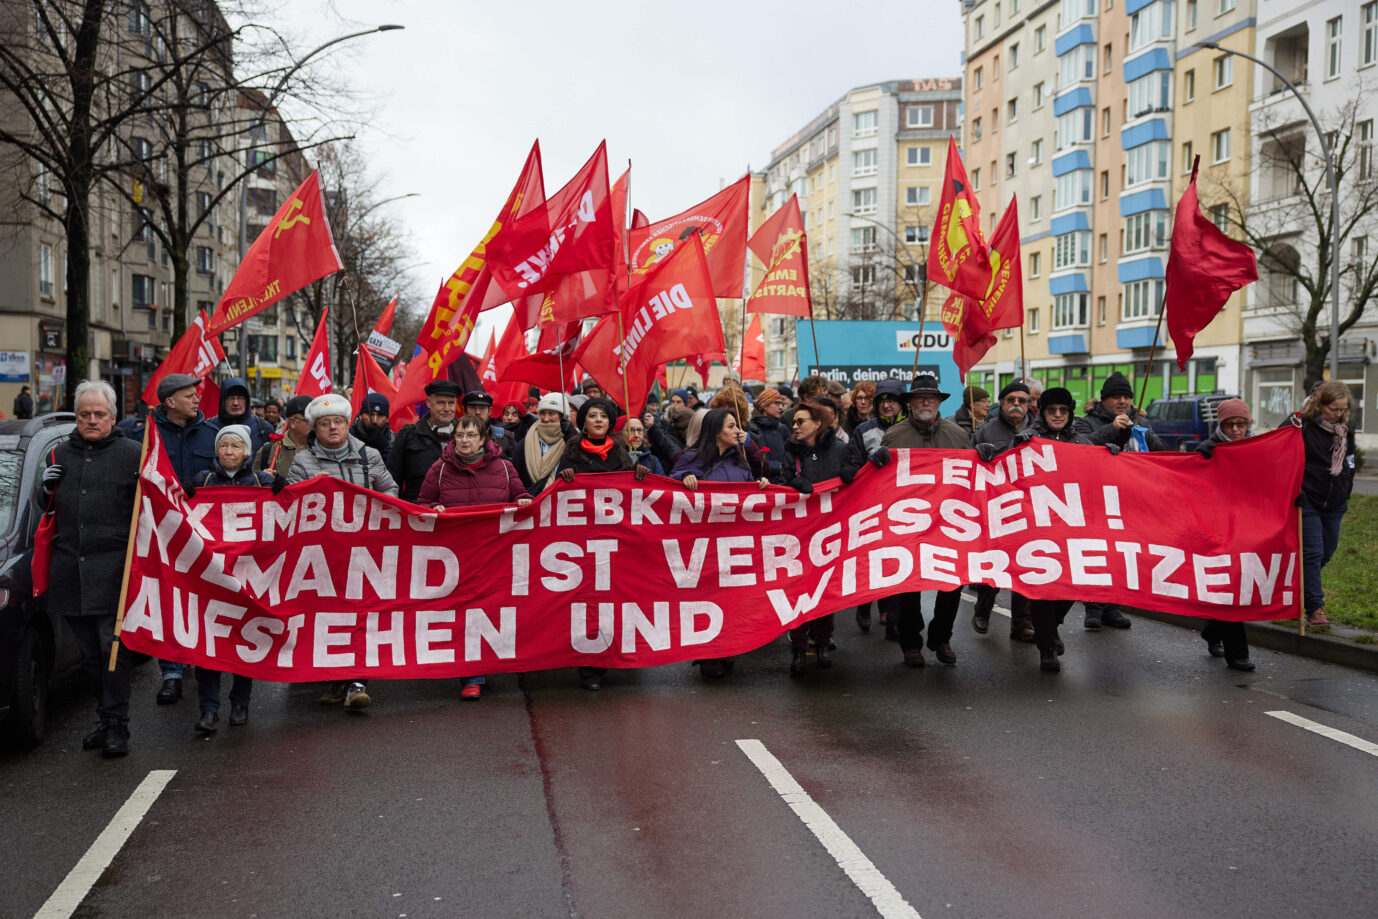 Aufmarsch mit roten Fahnen und Gewalt: Luxemburg-Liebknecht-Demo am Sonntag in Berlin.